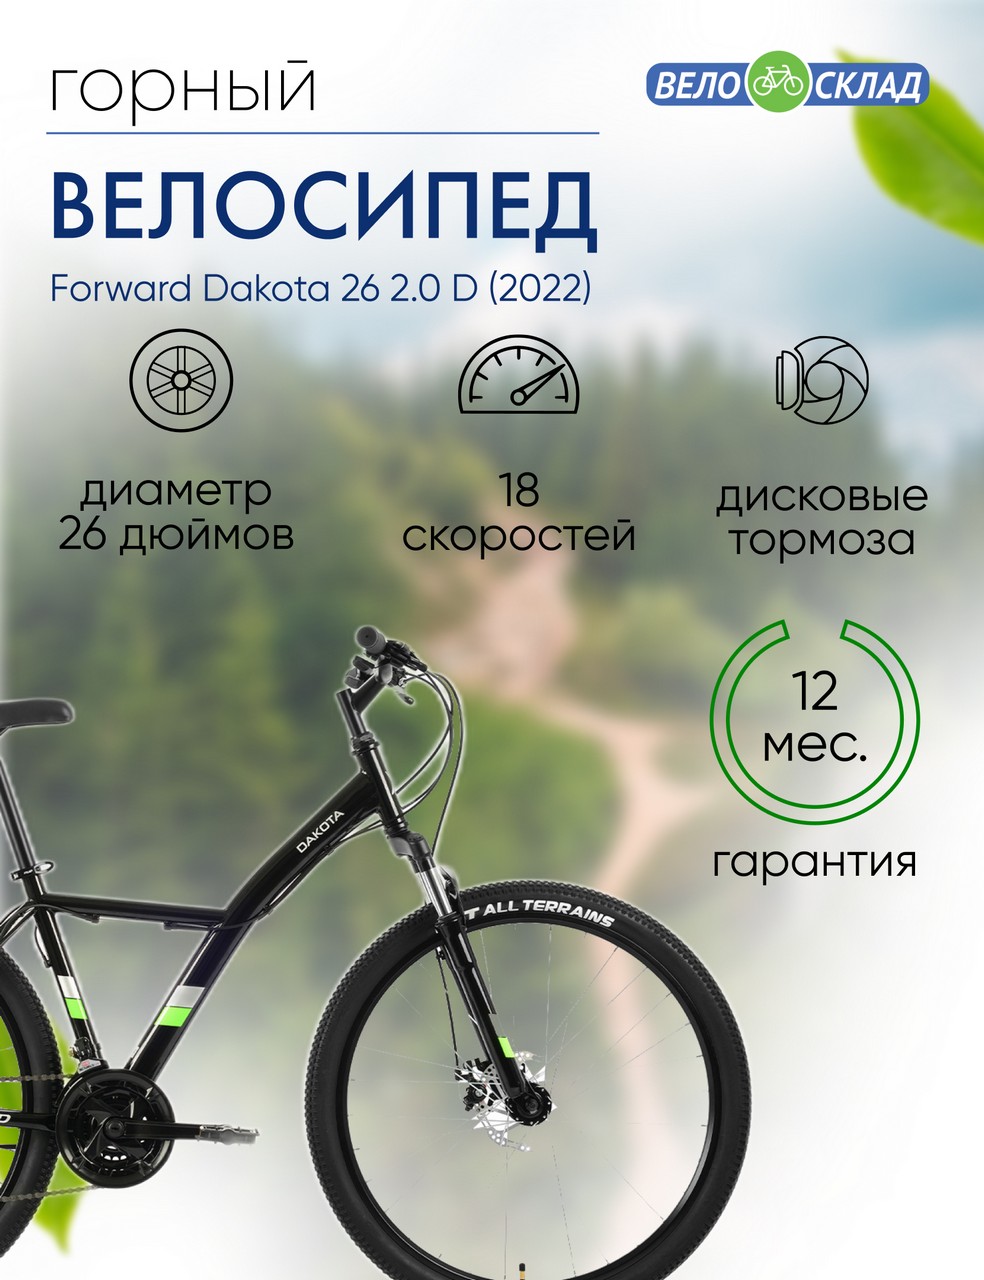 Горный велосипед Forward Dakota 26 2.0 D, год 2022, цвет Черный-Зеленый, ростовка 16.5